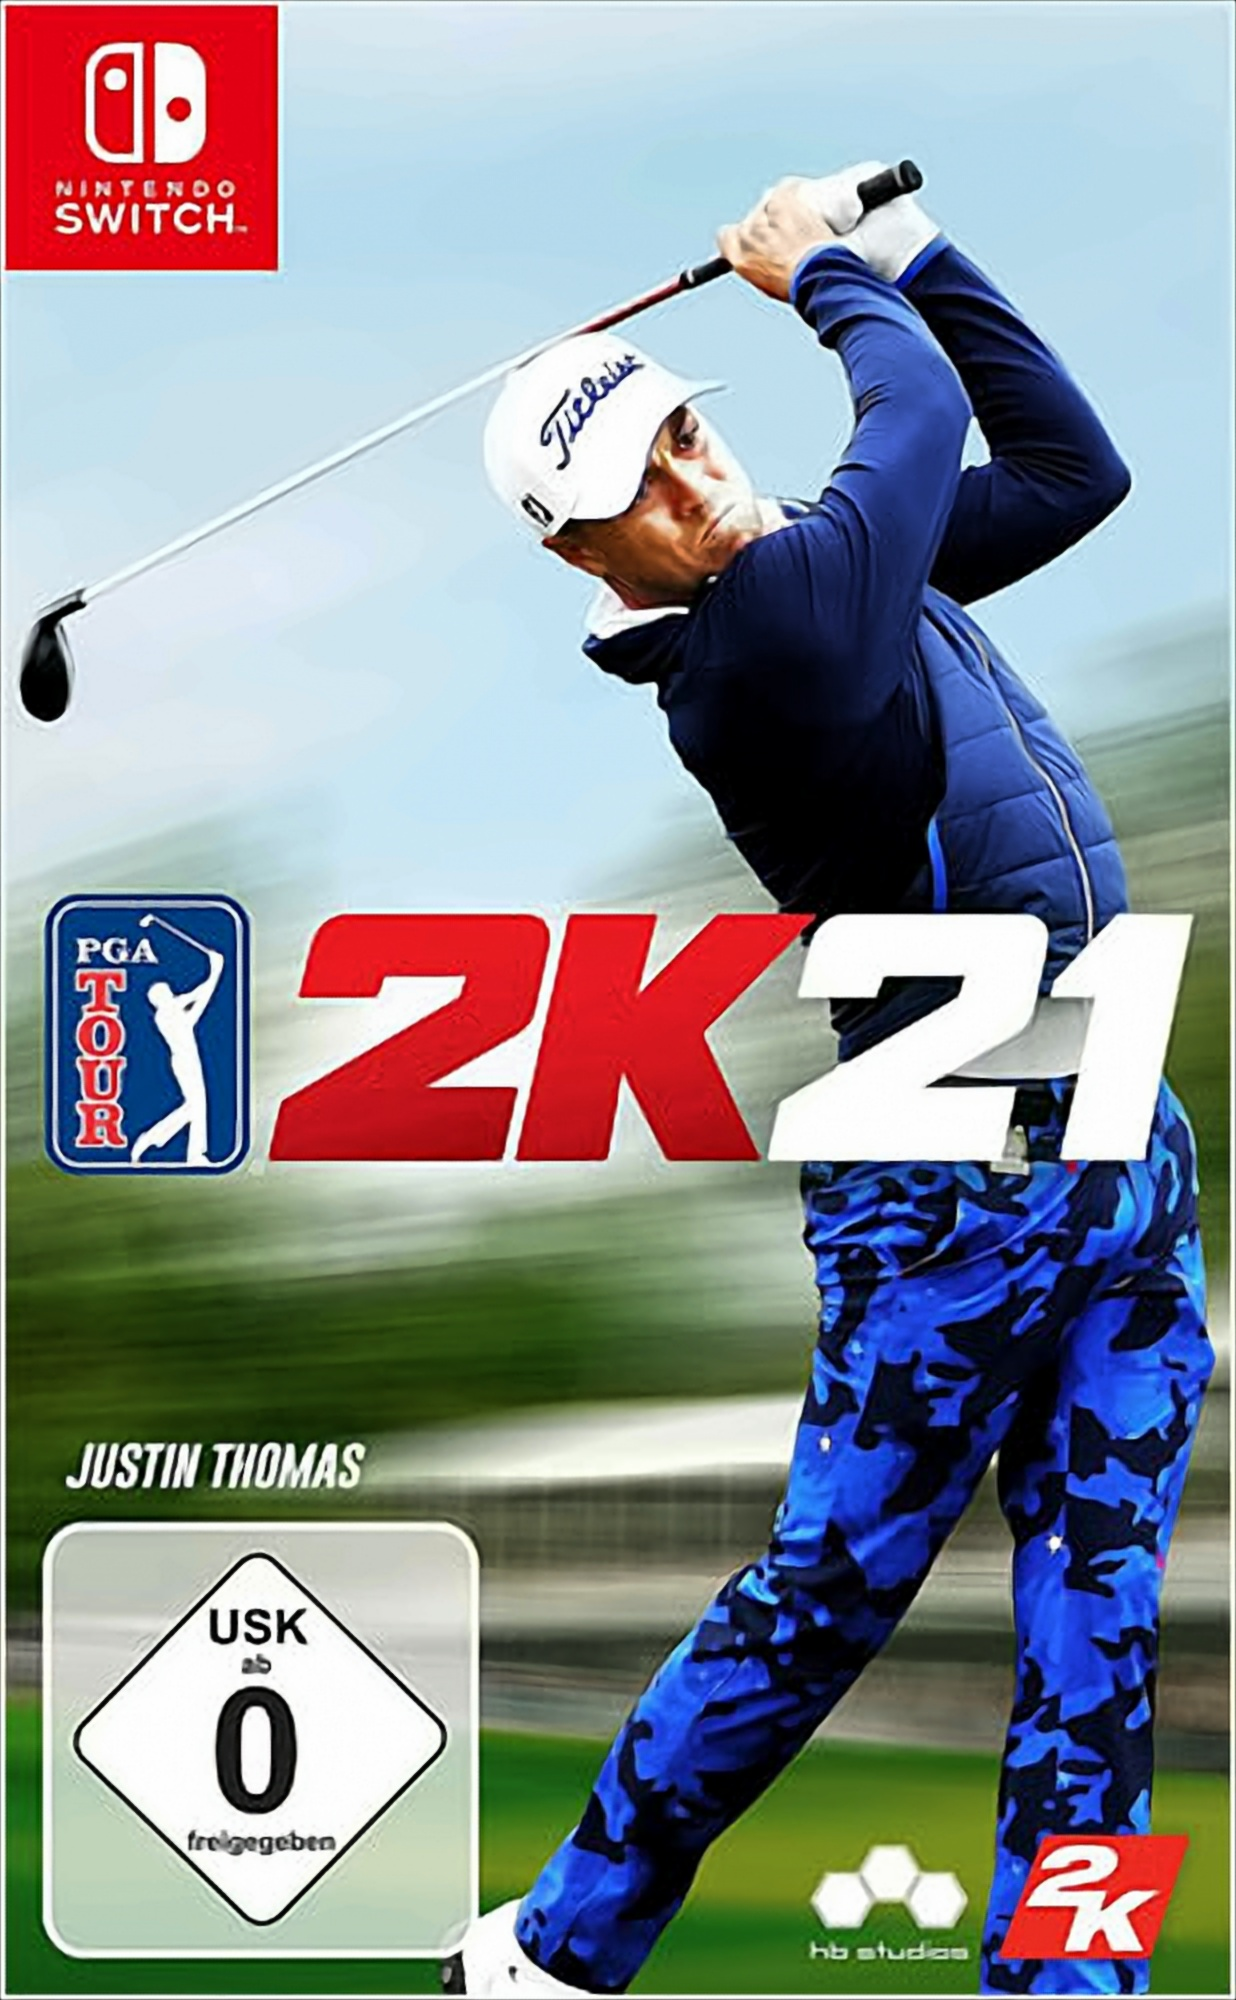 Switch] 2K21 Tour Justin PGA Switch CIAB - Thomas [Nintendo